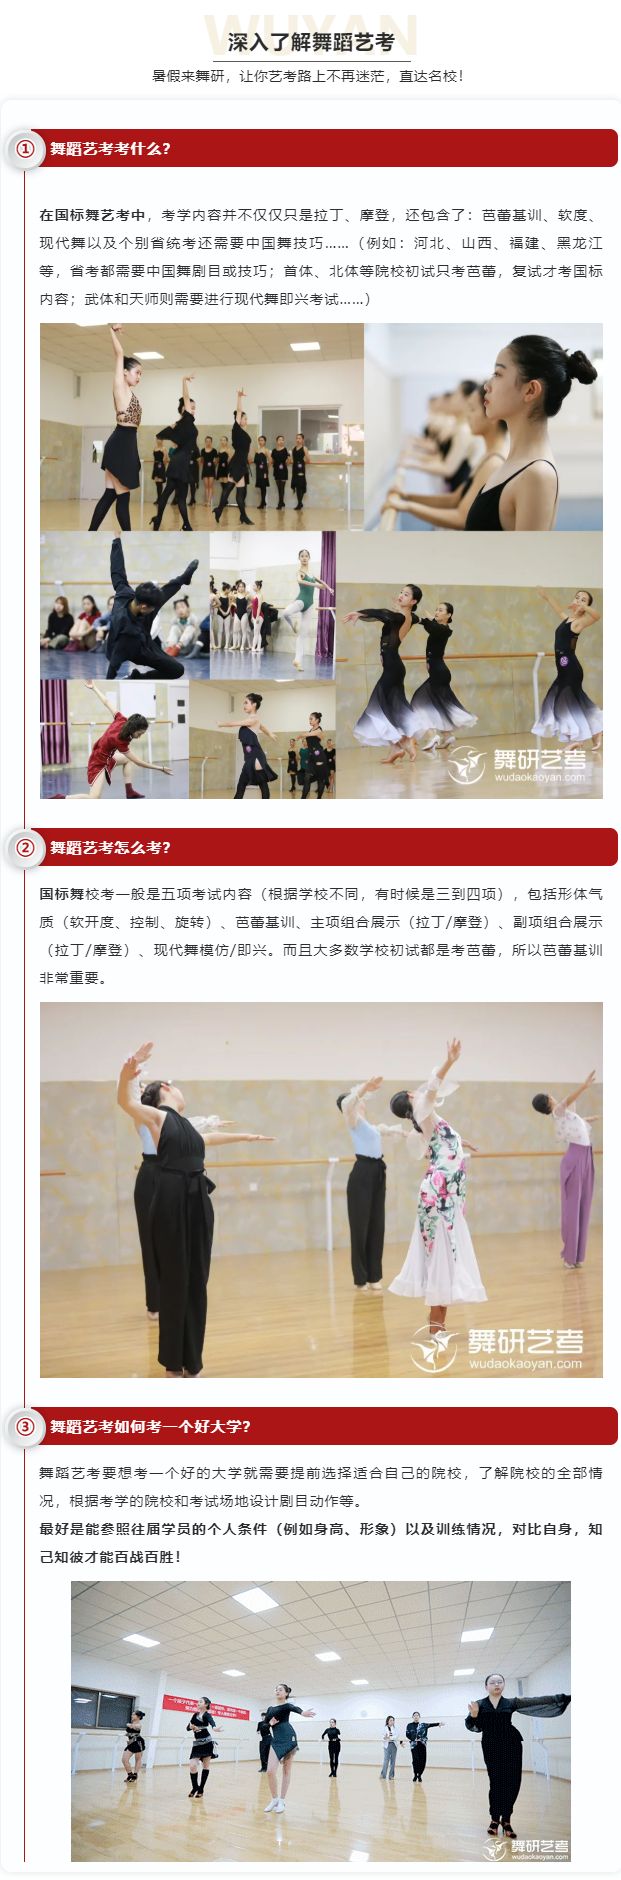 舞研國標舞暑期試課開始預約啦！北京、山東兩大校區均可試課，更有超多好禮免費送！